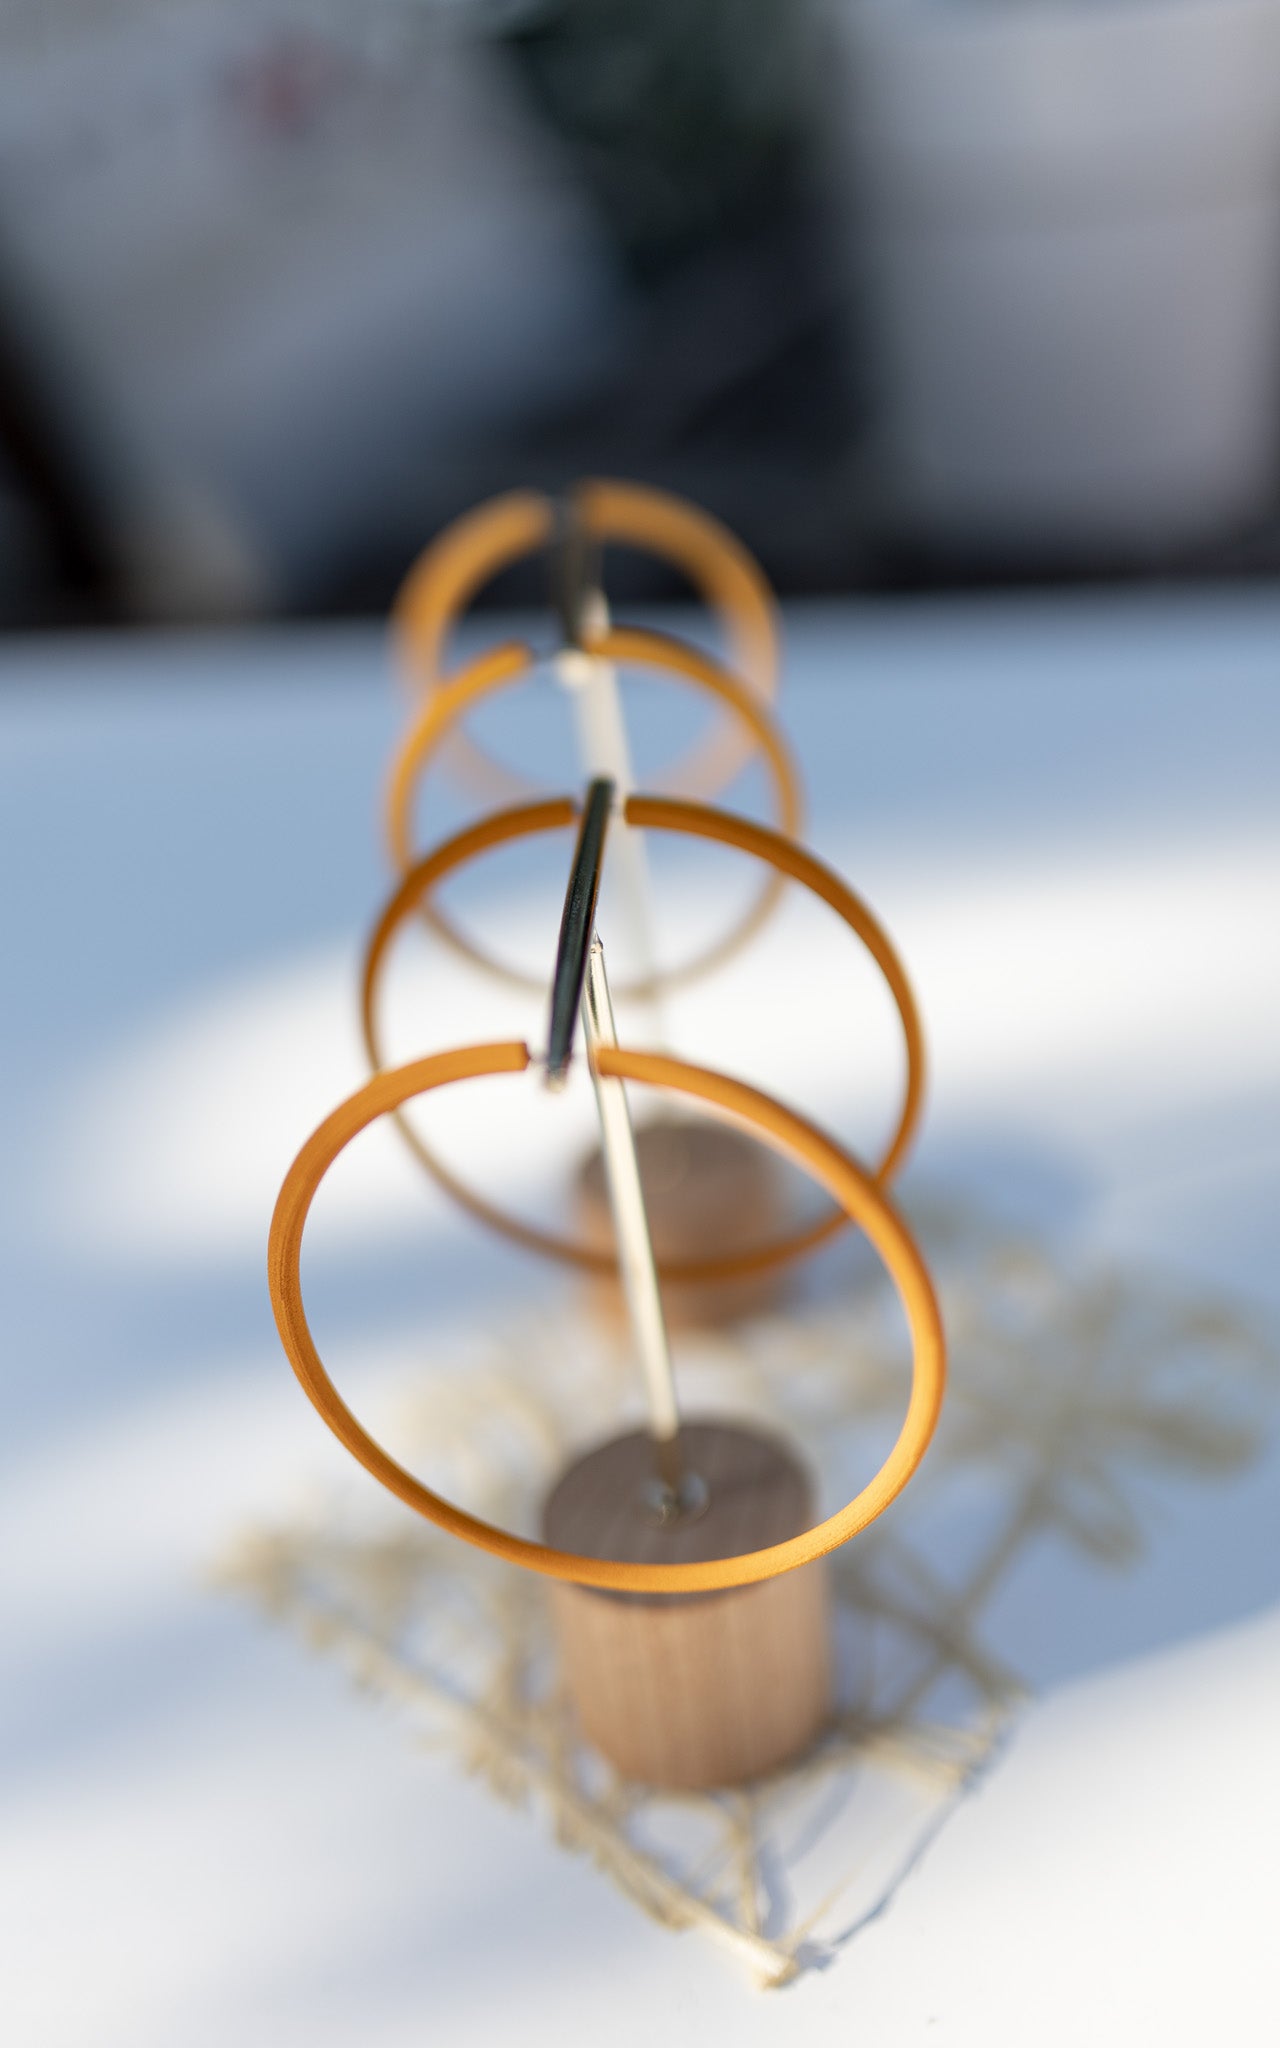 Les anneaux Atlas 8 cm. Bijoux 3D sur support a bijoux. Couleur moutarde